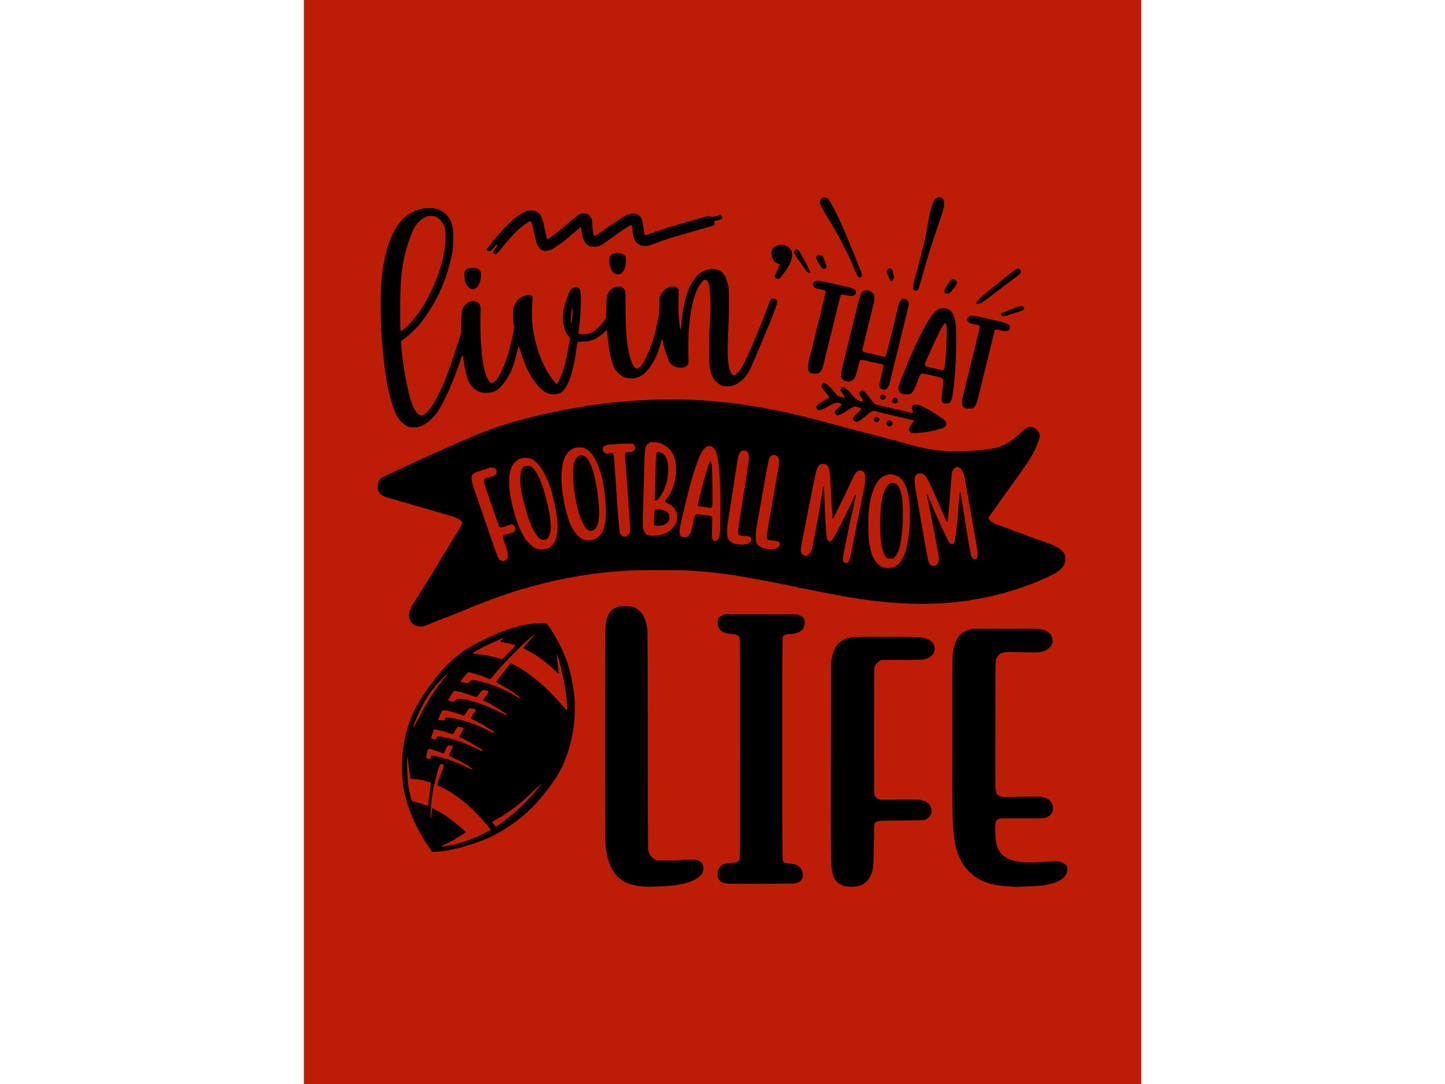 Livin That Football Mom Life T-shirt or Sweatshirt